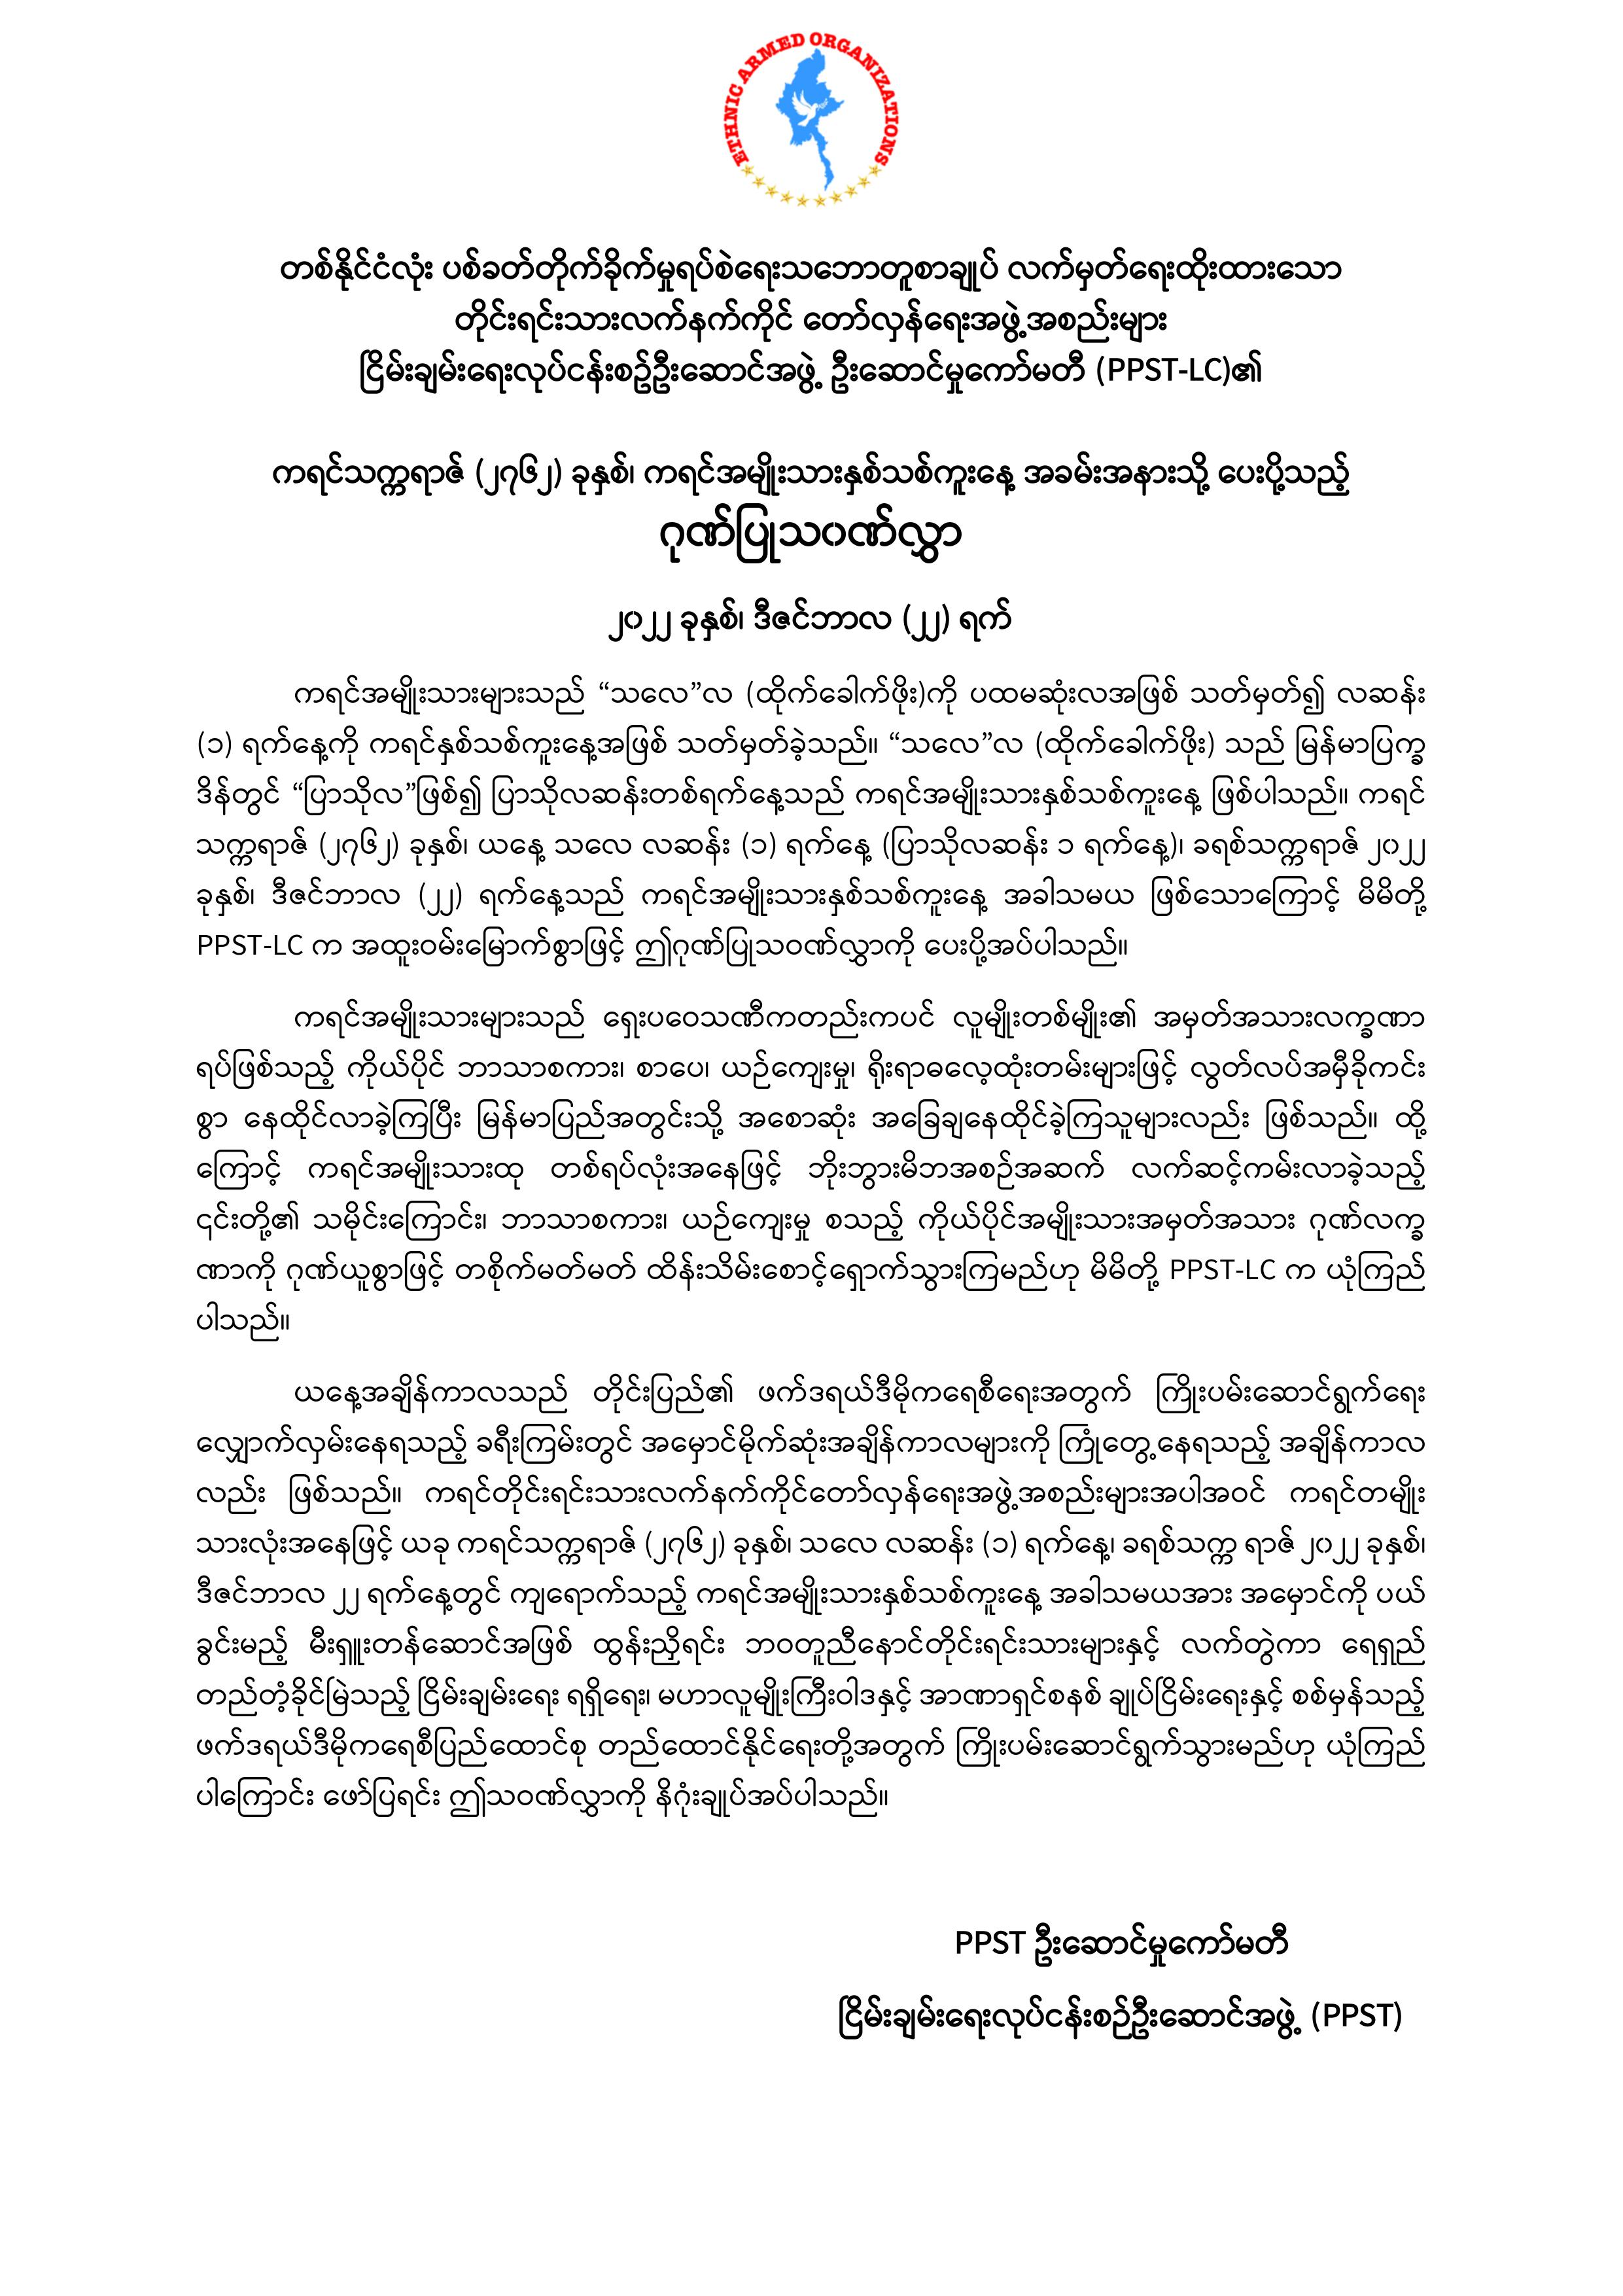 PPST Leading Committee's Felicitation Letter sent to Karen New Year Day of 2762 Karen Era (KE)